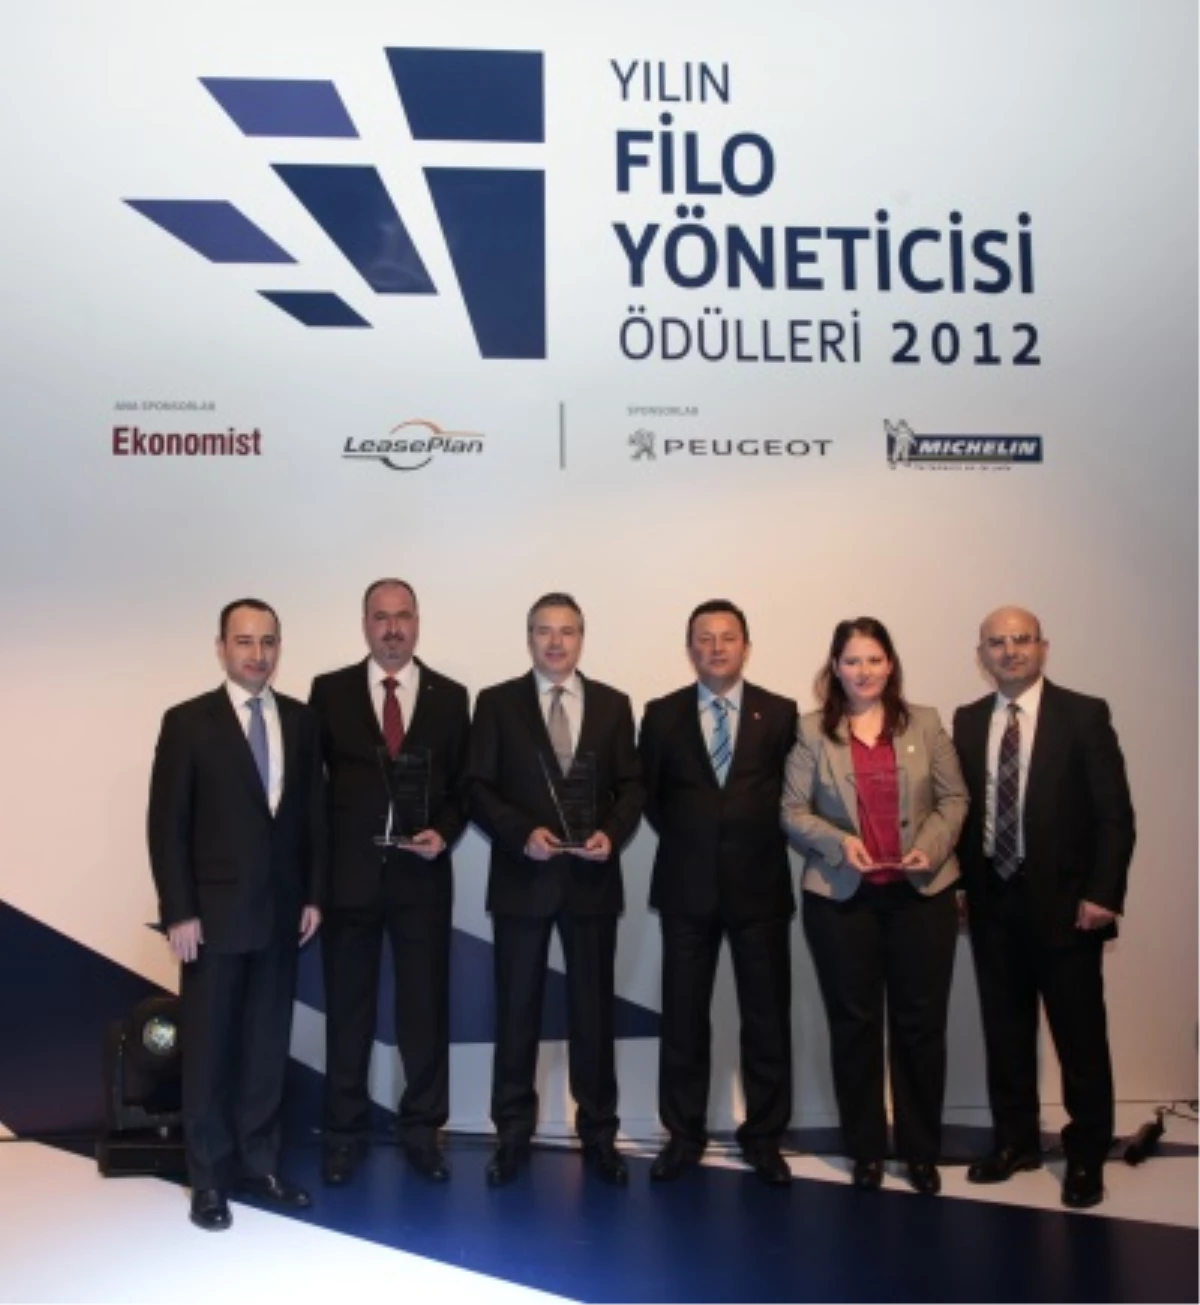 2012 Yılın Filo Yöneticisi Ödülleri Sahiplerini Buldu